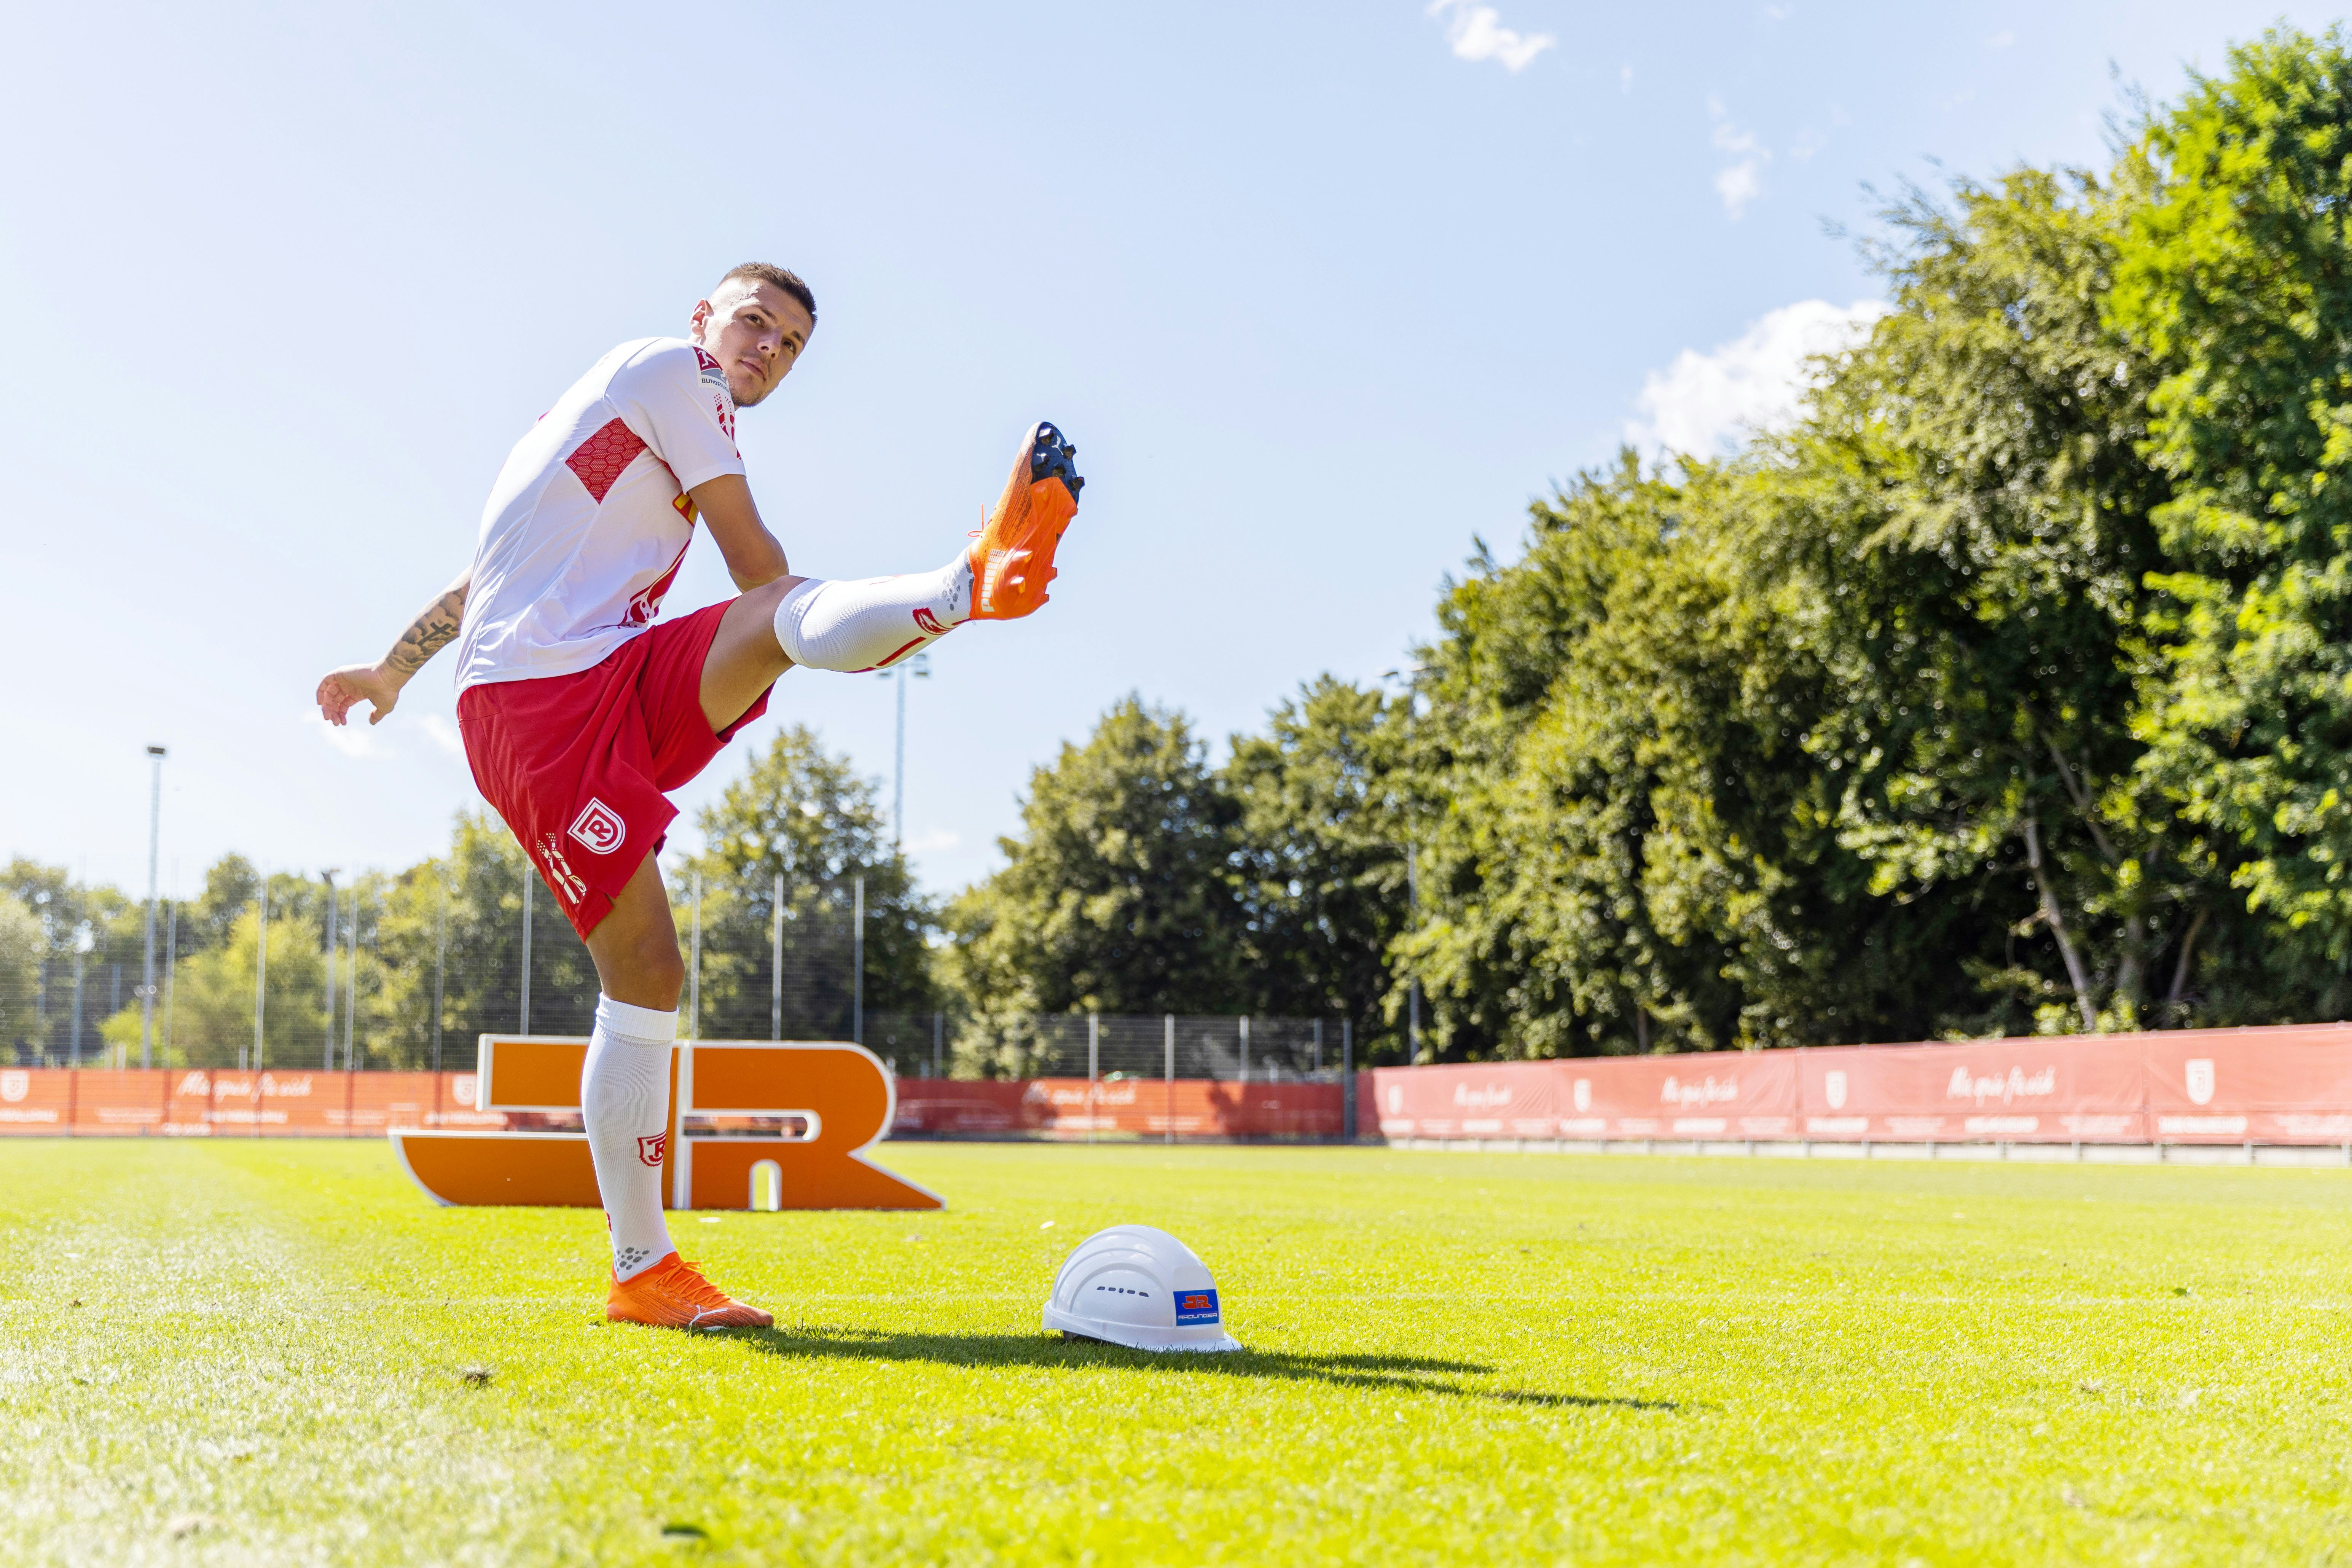 Spieler des SSV Jahn Regensburg auf Fußballplatz, Rädlinger Bauhelm auf dem Rasen, im Hintergrund Rädlinger Logo